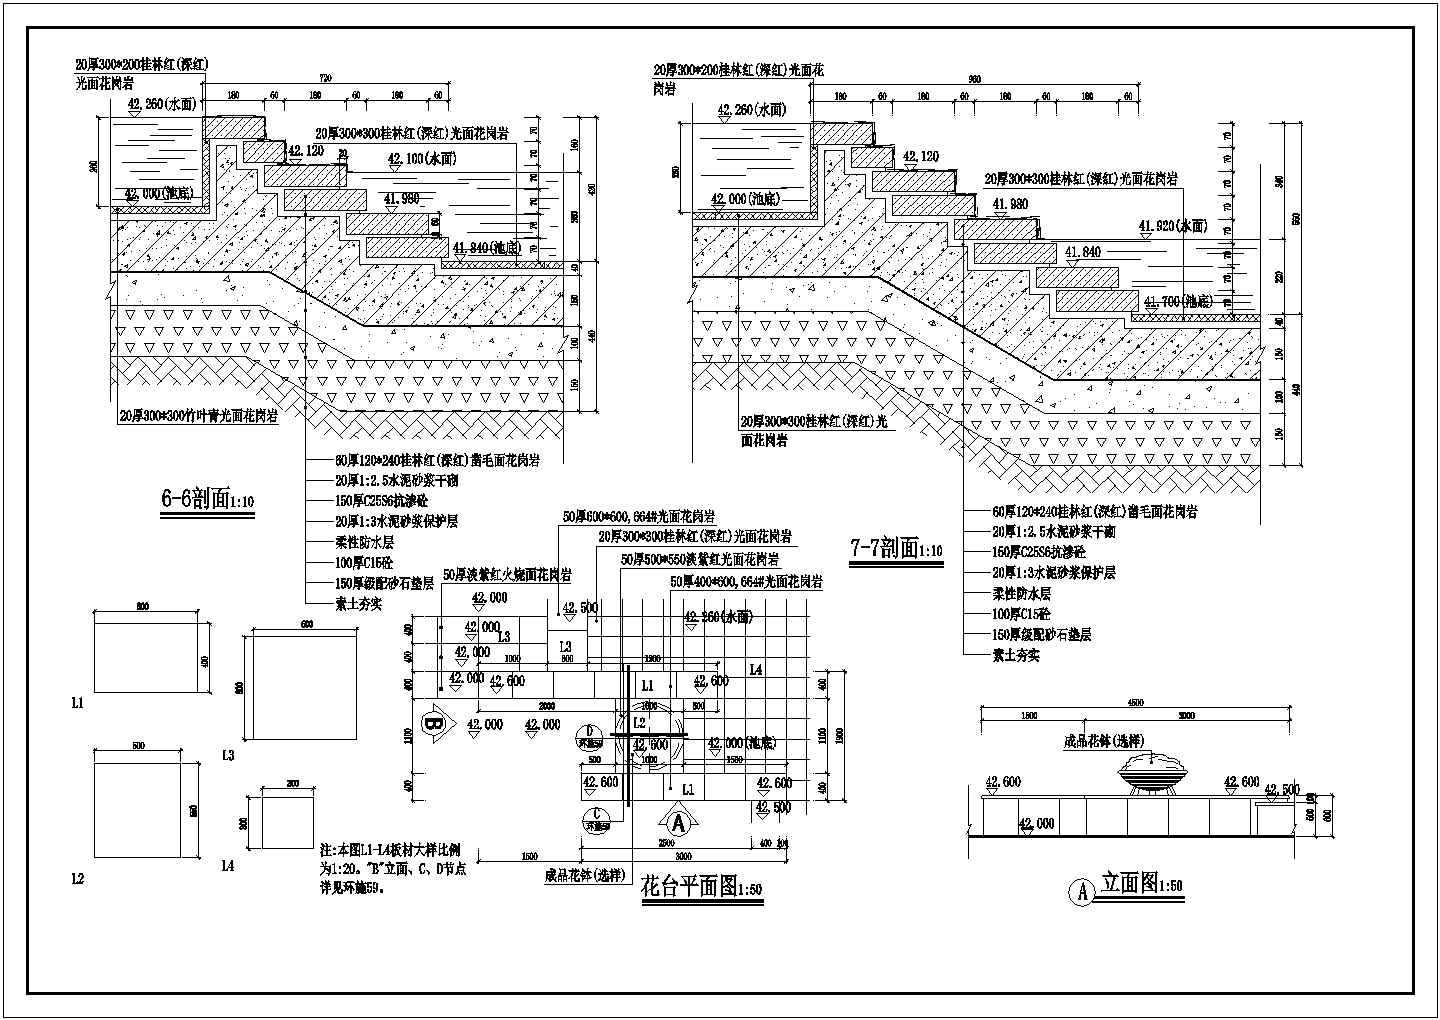 东莞旱喷广场园林景观详细建筑施工图